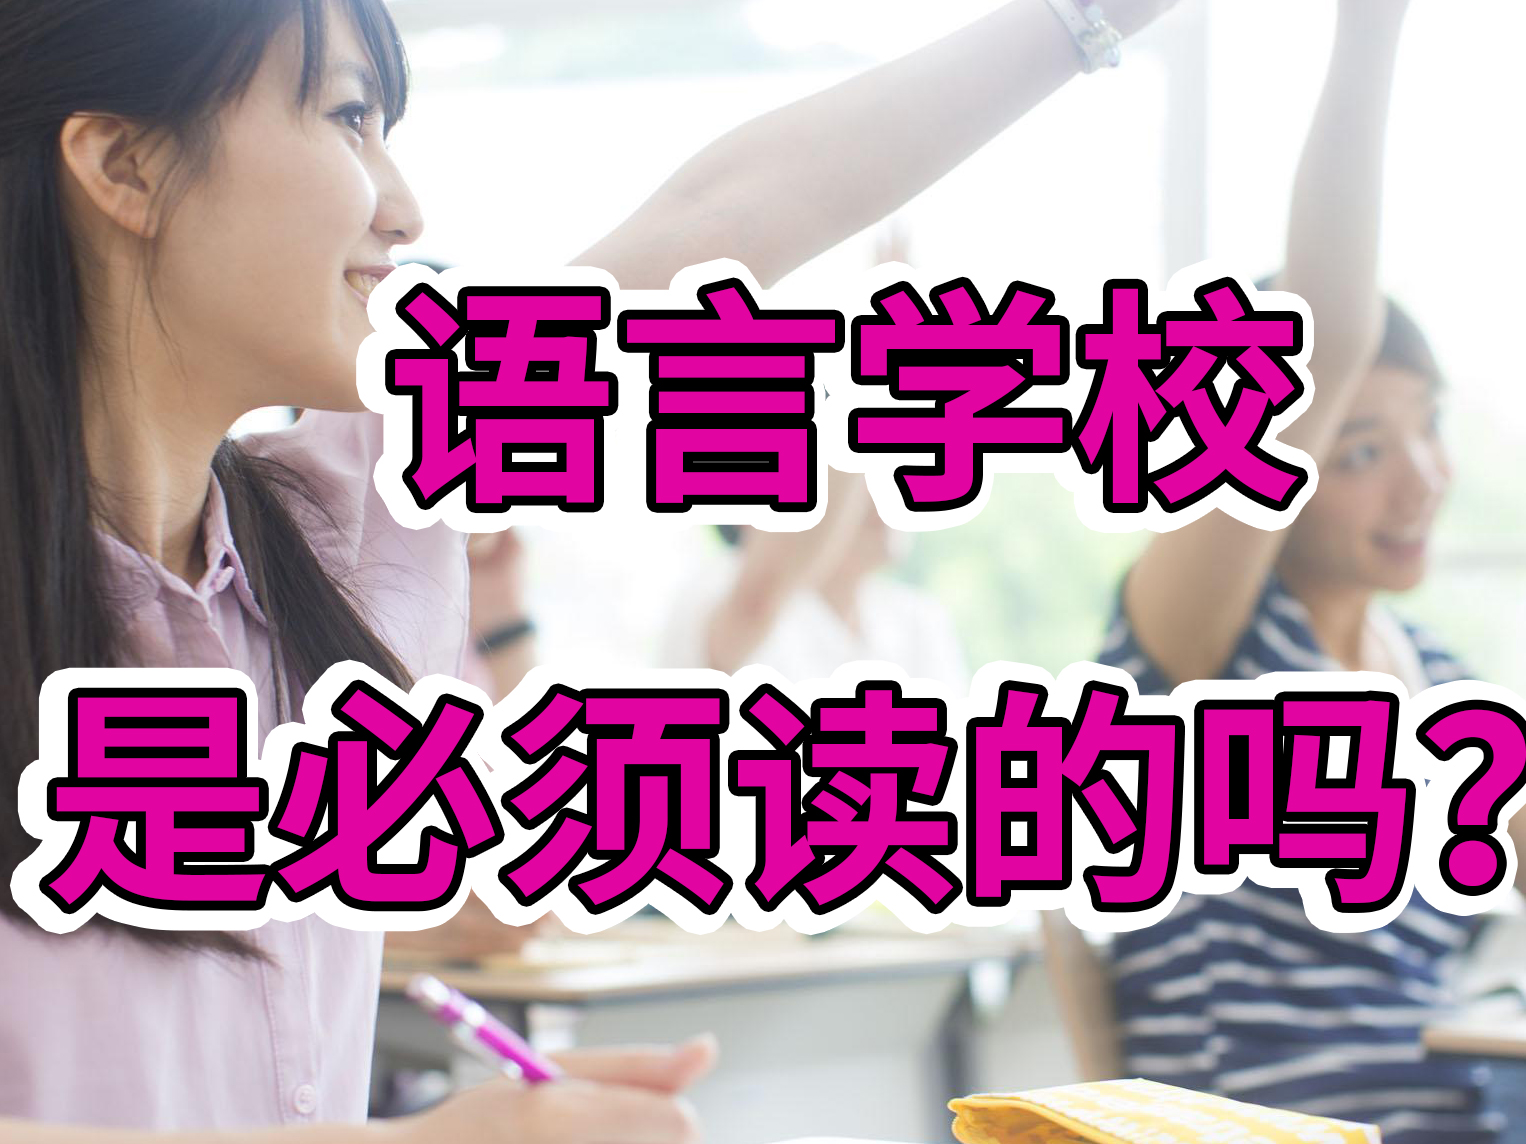 语言学校是日本留学必须的吗？